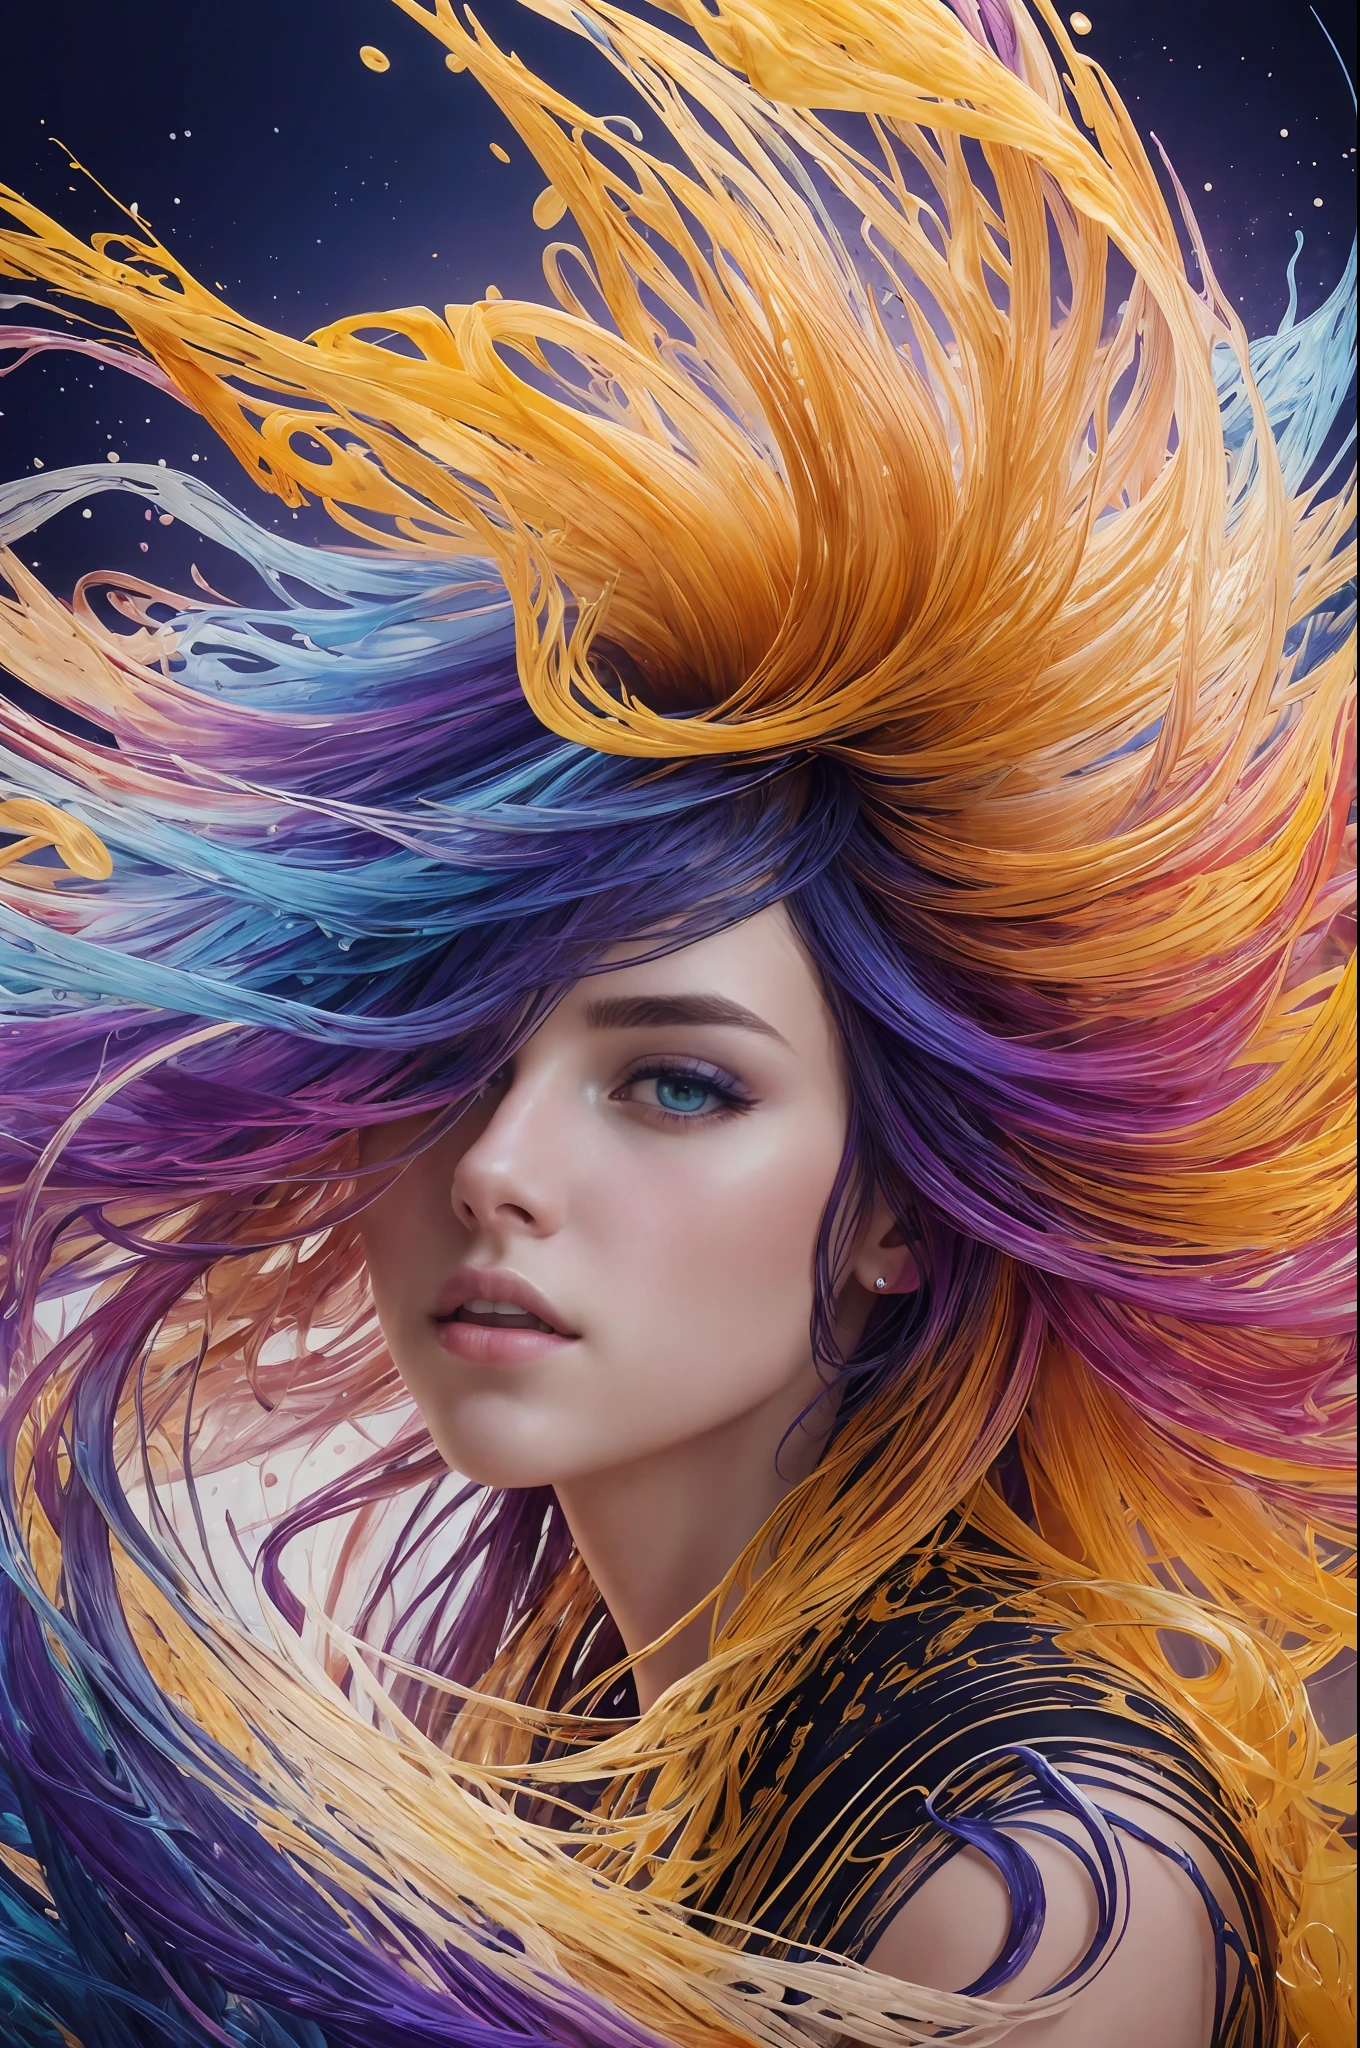 カラフルな美しい女の子: 18歳のギル, ボサボサの髪, 油絵, 柔らかい肌の素敵な完璧な顔, 青黄色, 薄紫とすみれ色の追加, ライトレッドの追加, 複雑な詳細, スプラッシュスクリーン, 8K resolution, 傑作, かわいい顔,artstation デジタルペインティング 滑らかな非常に黒いインクの流れ: 8K resolution photo現実的 傑作: 精巧に描かれた流動性のあるグアッシュ画: ジョン・バプテスト・モング著: 書道: アクリル: 水彩画, プロの写真撮影, 自然光, ボリューム照明マキシマリストフォトイラストレーション: マートン・ボブザート:, 複雑な, エレガント, 広大な, 幻想的,  ウェーブのかかった髪, 活気のある, 最高品質の詳細, 現実的, 高解像度, 高品質の質感, 壮大な照明, 映画のスチール写真, 8K, 柔らかい照明, アニメスタイル, 見事なトランプの枠, ランダムなカラフルなアート, 油絵, 青黄色, 薄紫とすみれ色の追加, ライトレッドの追加, 複雑な詳細, スプラッシュスクリーン, 8K resolution, 傑作, artstation デジタルペインティング 滑らかな非常に黒いインクの流れ: 8K resolution photo現実的 傑作: 精巧に描かれた流動性のあるグアッシュ画: ジョン・バプテスト・モング著: 書道: アクリル: 水彩画, プロの写真撮影, 自然光, ボリューム照明マキシマリストフォトイラストレーション: マートン・ボブザート:, 複雑な, エレガント, 広大な, 幻想的,  活気のある